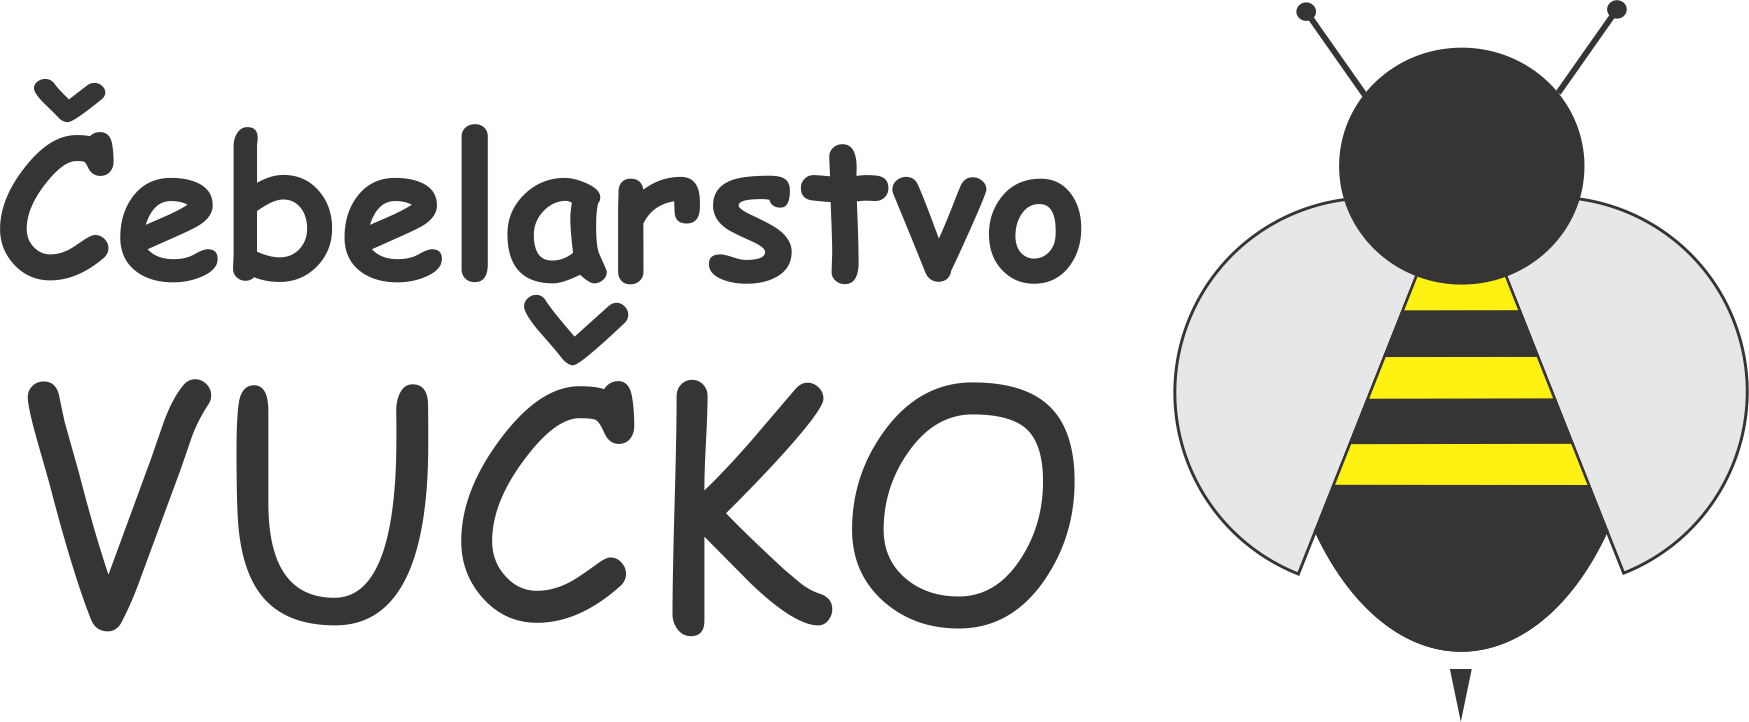 images/logo vucko.png